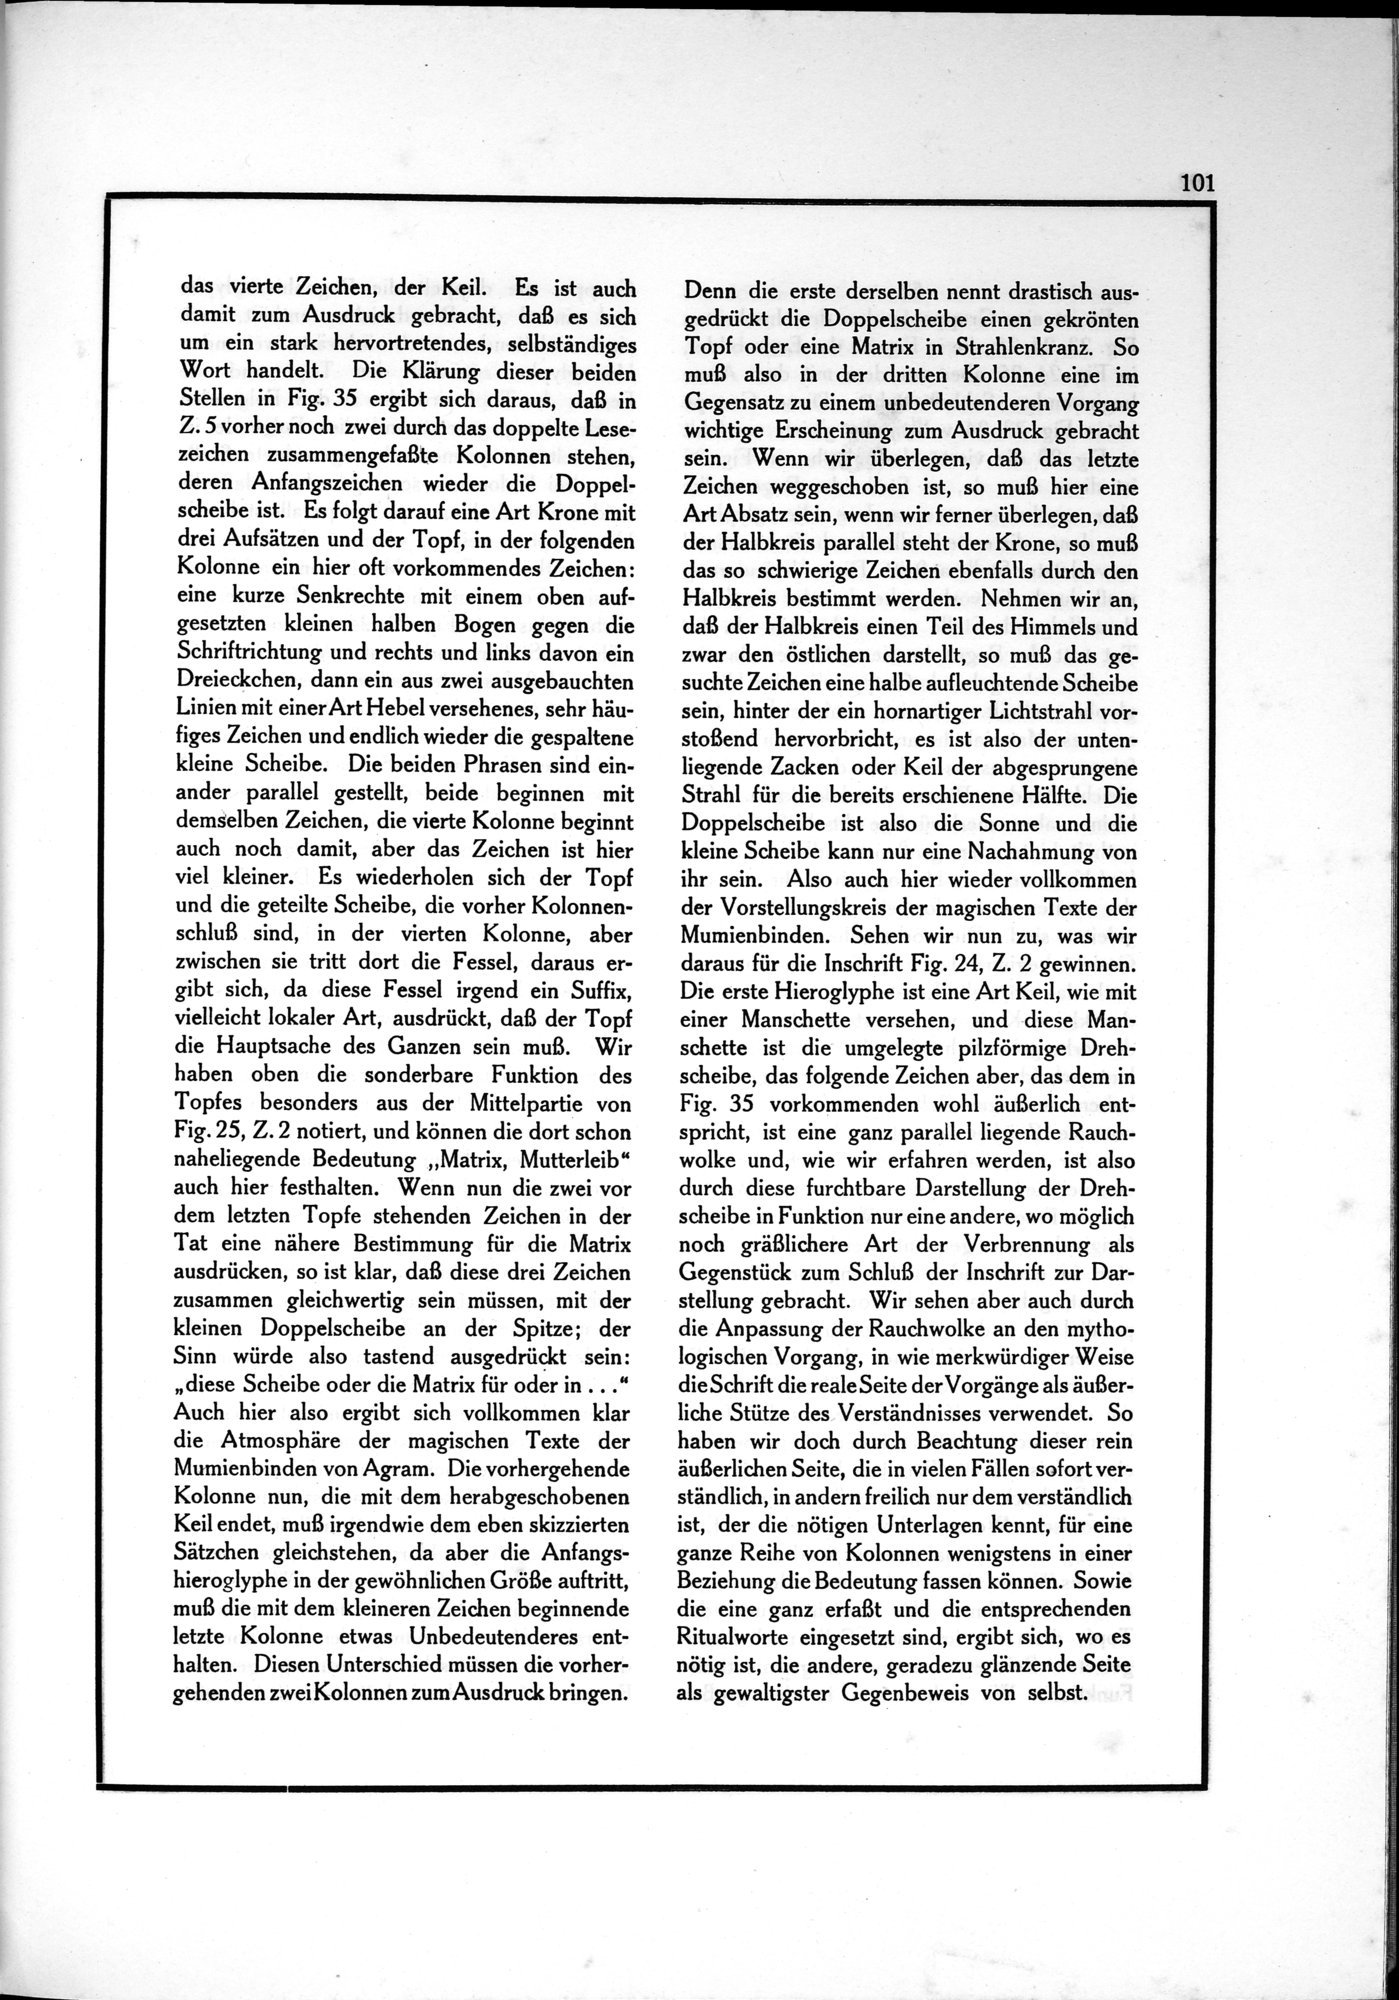 Die Teufel des Avesta und Ihre Beziehungen zur Ikonographie des Buddhismus Zentral-Asiens : vol.1 / Page 105 (Grayscale High Resolution Image)